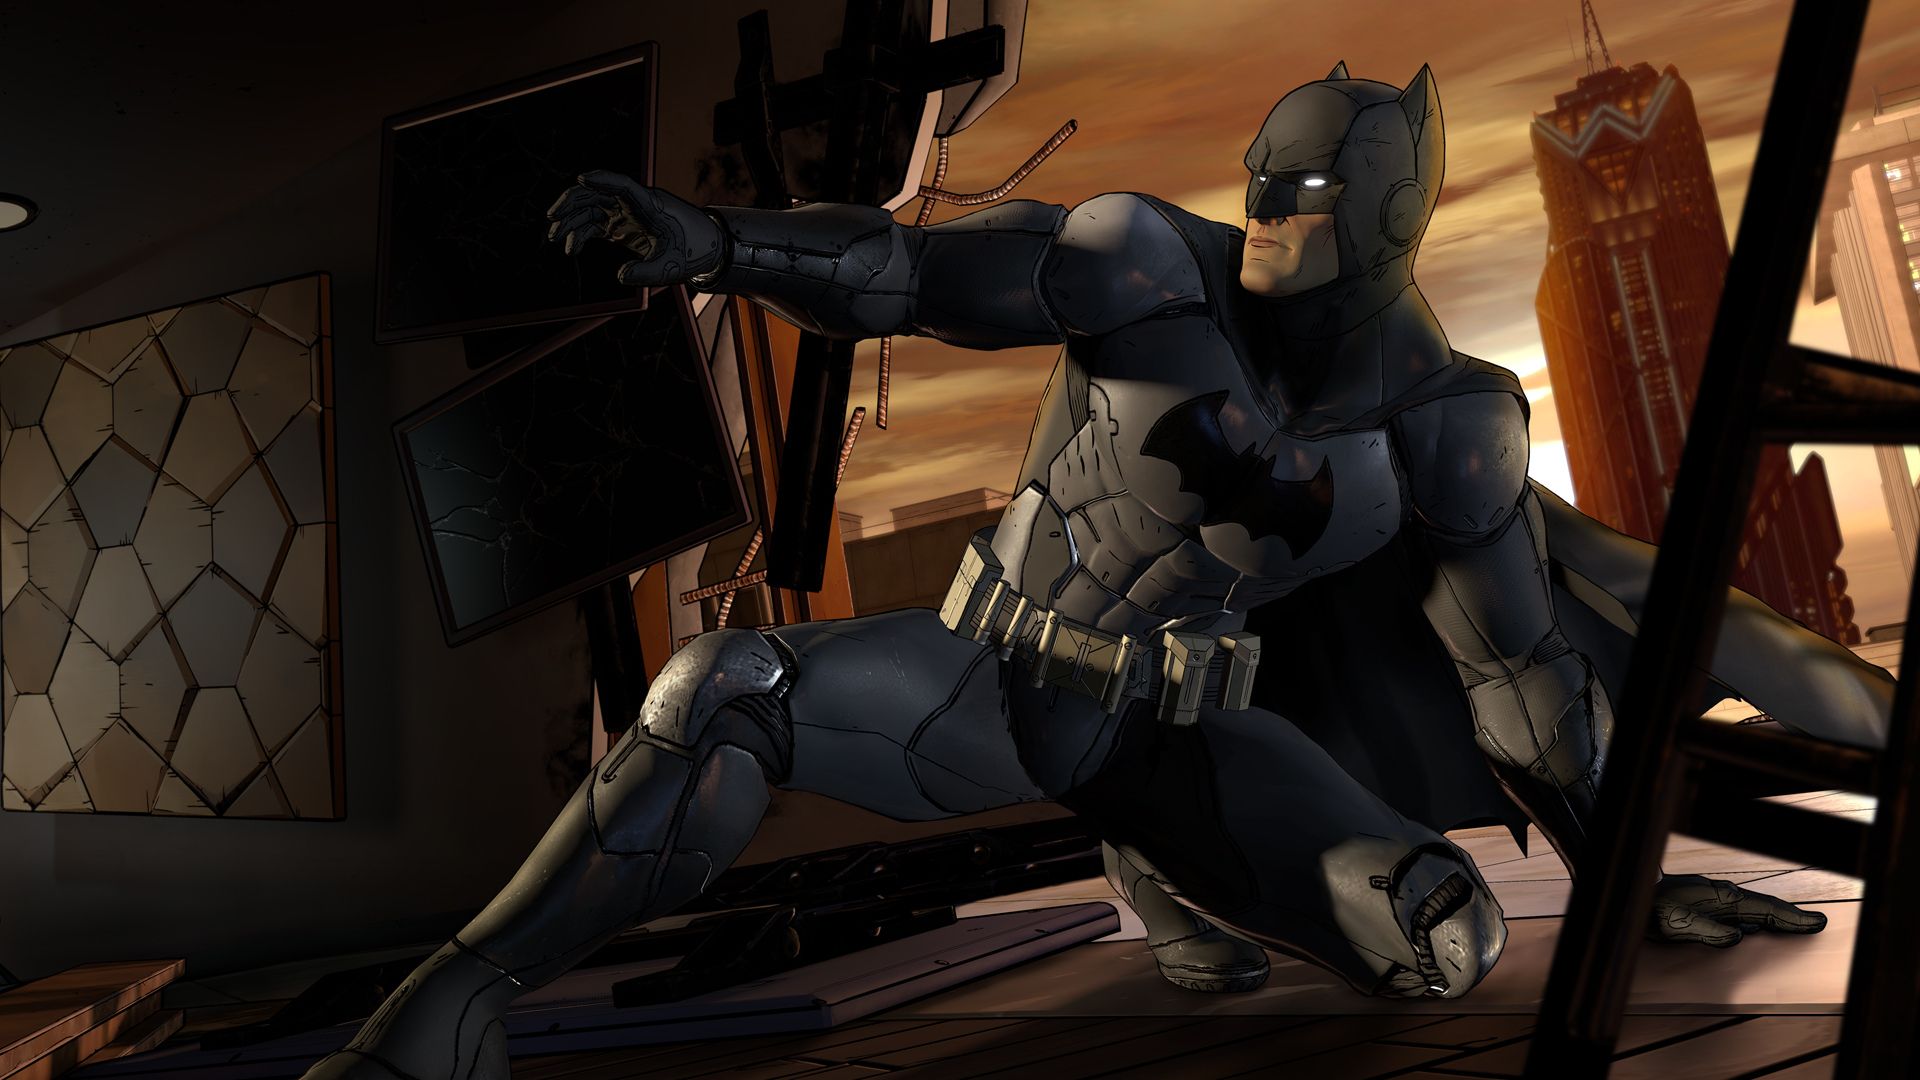 バットマン ゲーム - 暗いシーンでバットマンが屋根を横切って滑り、片方の膝を上げ、もう一方の膝を地面に下ろします。